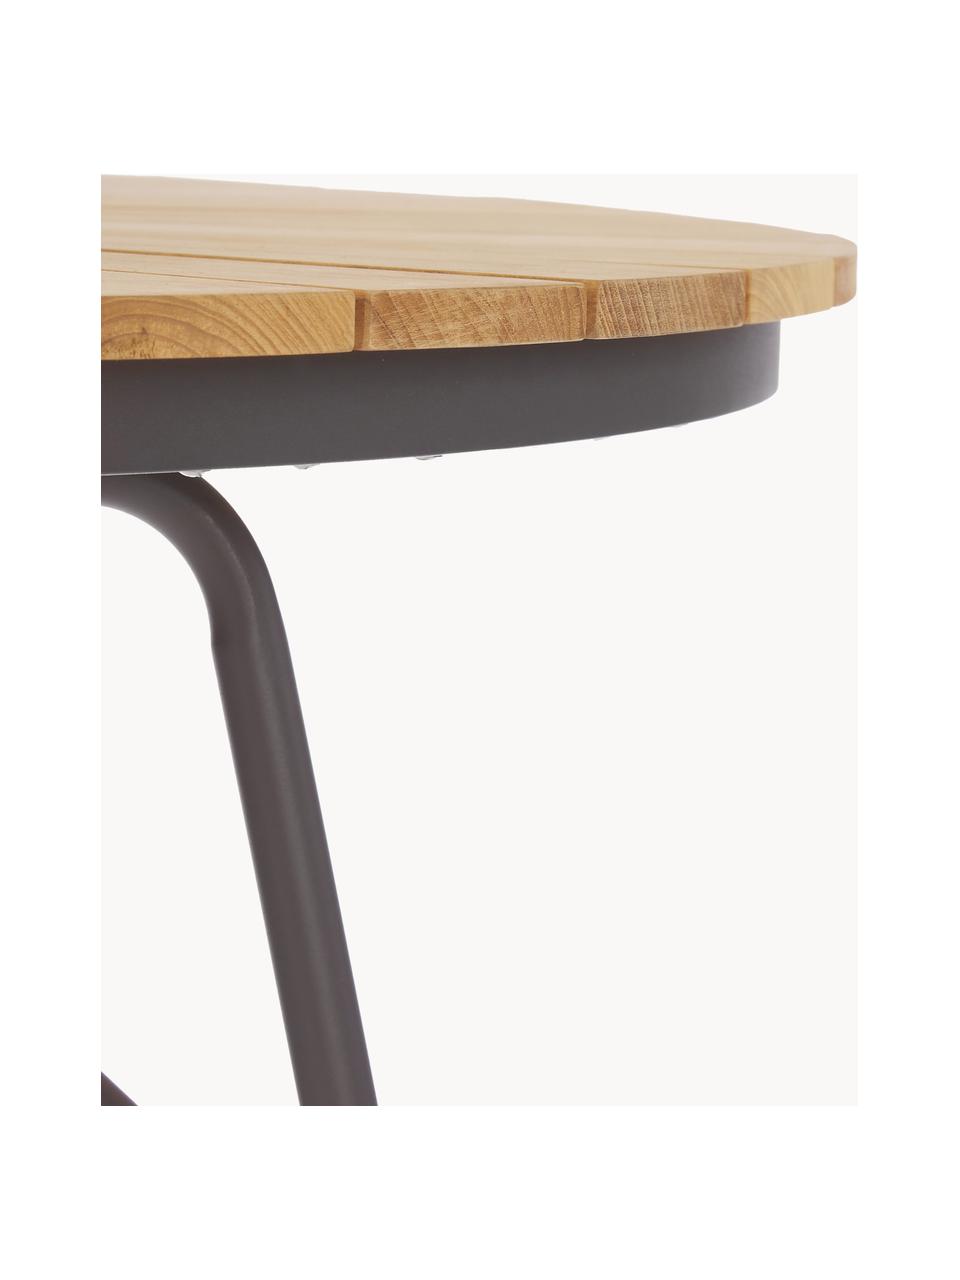 Kulatý zahradní stůl s deskou z teakového dřeva Hard & Ellen, různé velikosti, Teakové dřevo, antracitová, Ø 110 cm, V 73 cm